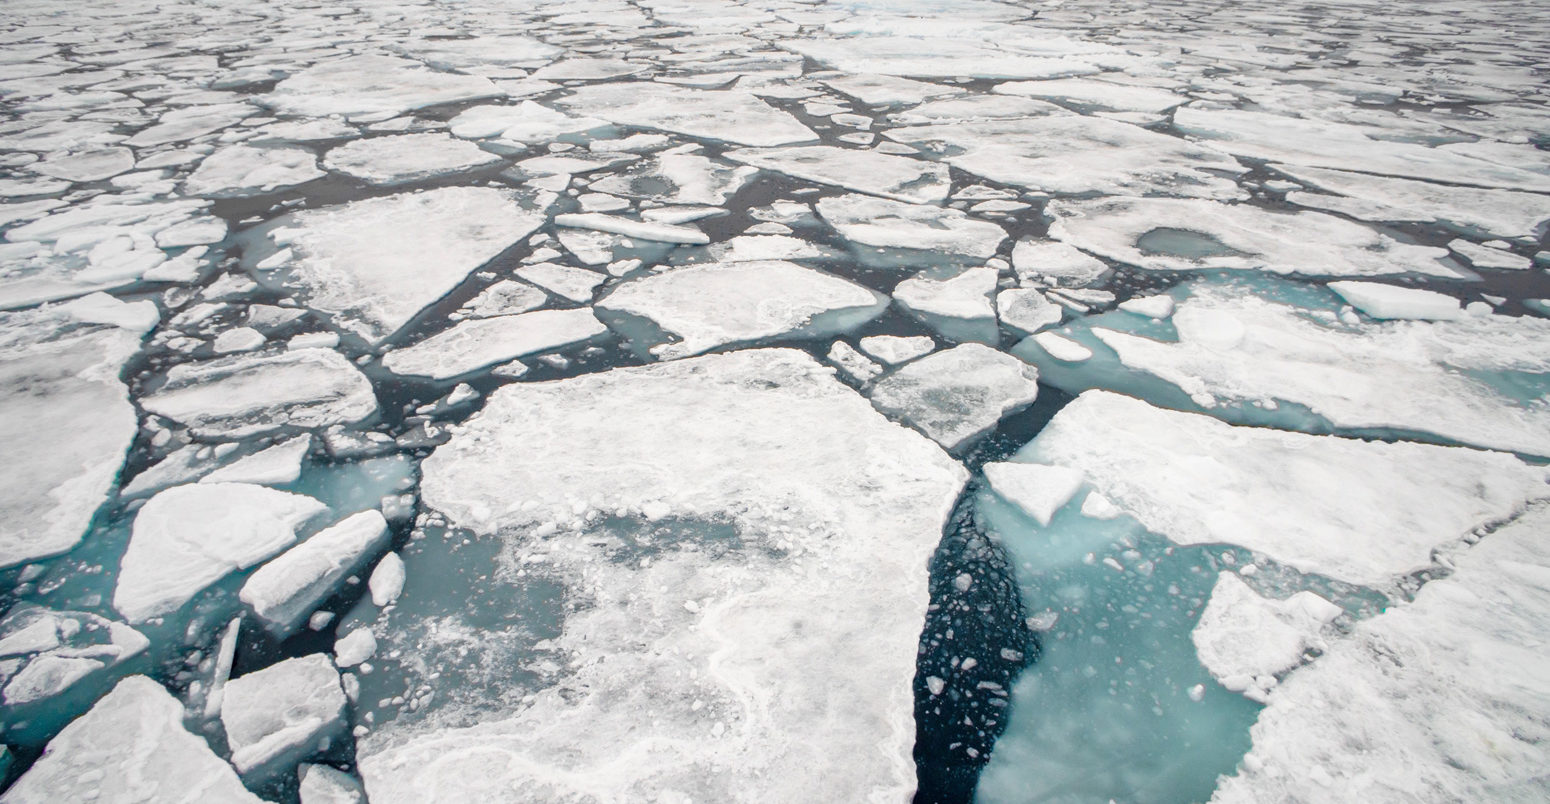 斯瓦尔巴特群岛的北冰洋浮冰